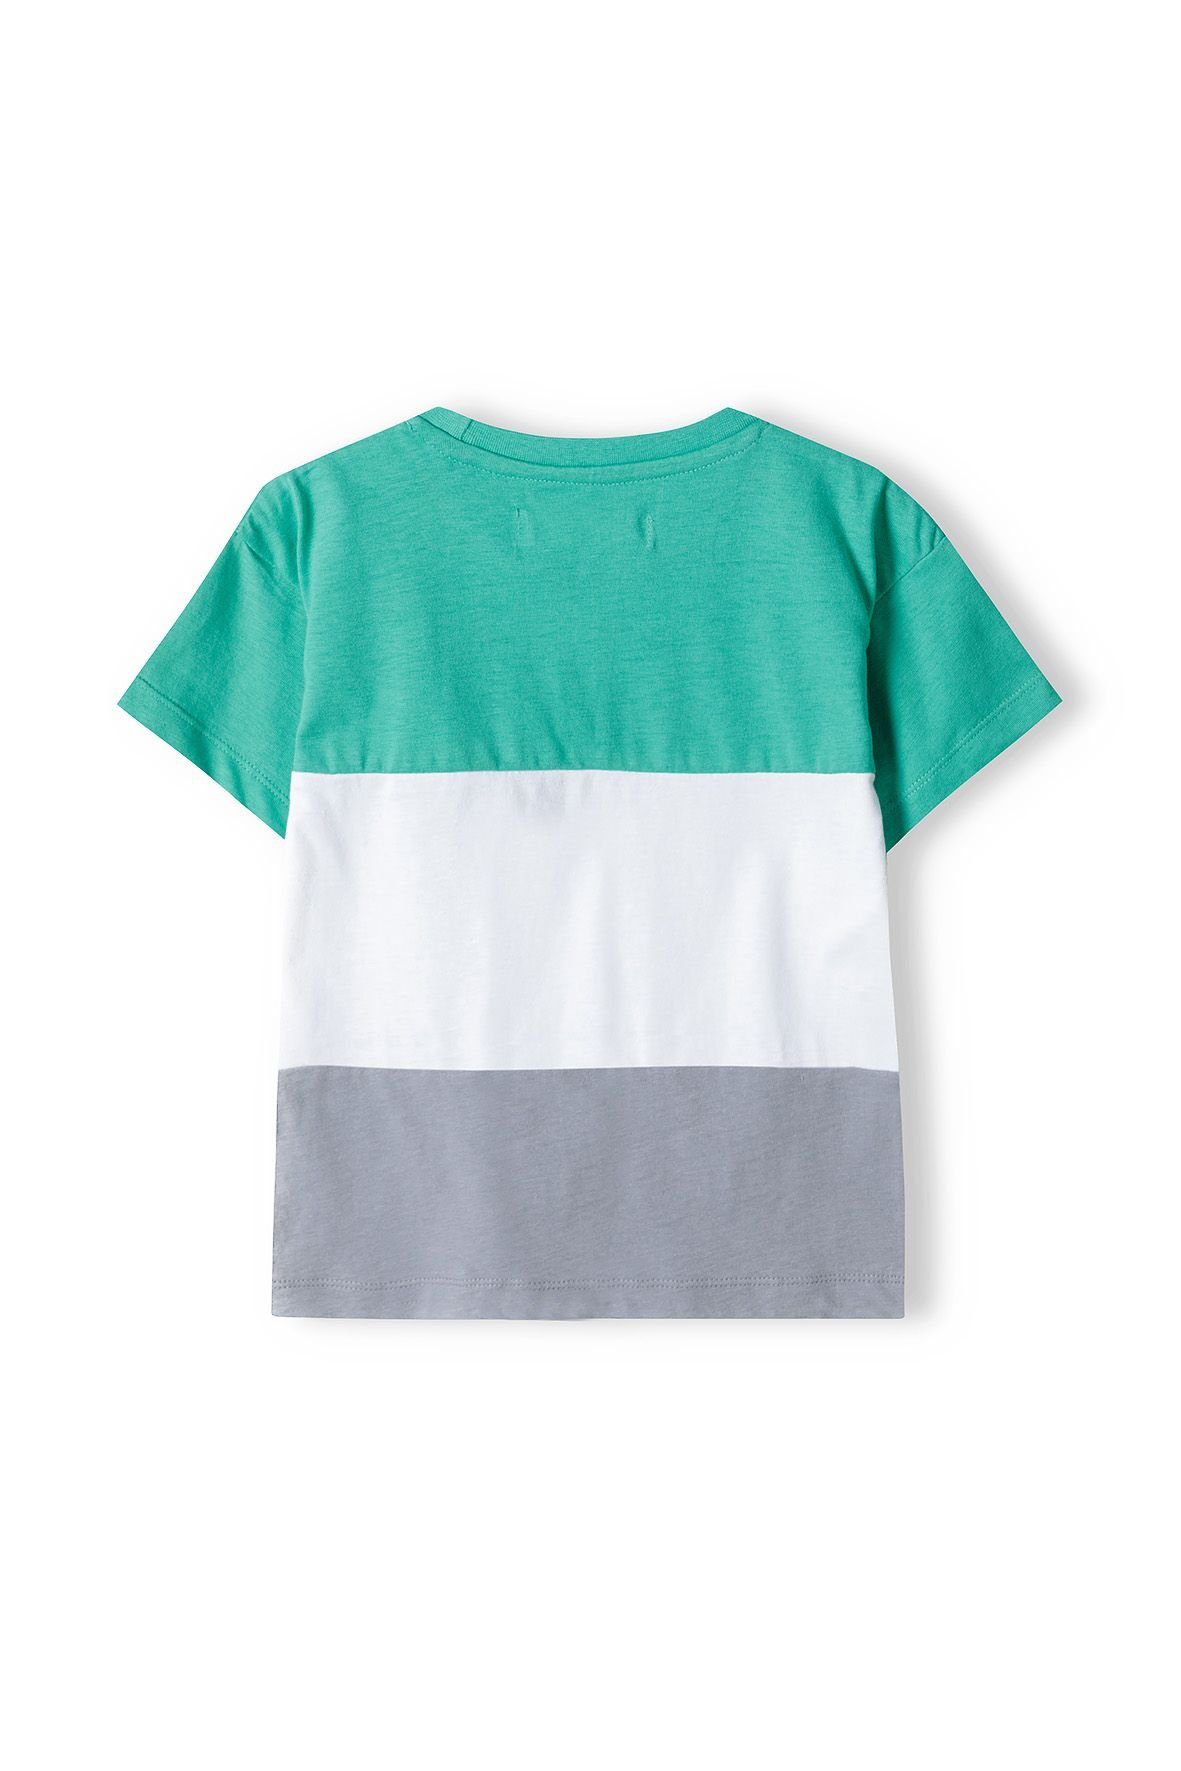 Sweatbermudas und Grün T-Shirt MINOTI Set Shorts & (12m-8y) T-Shirt